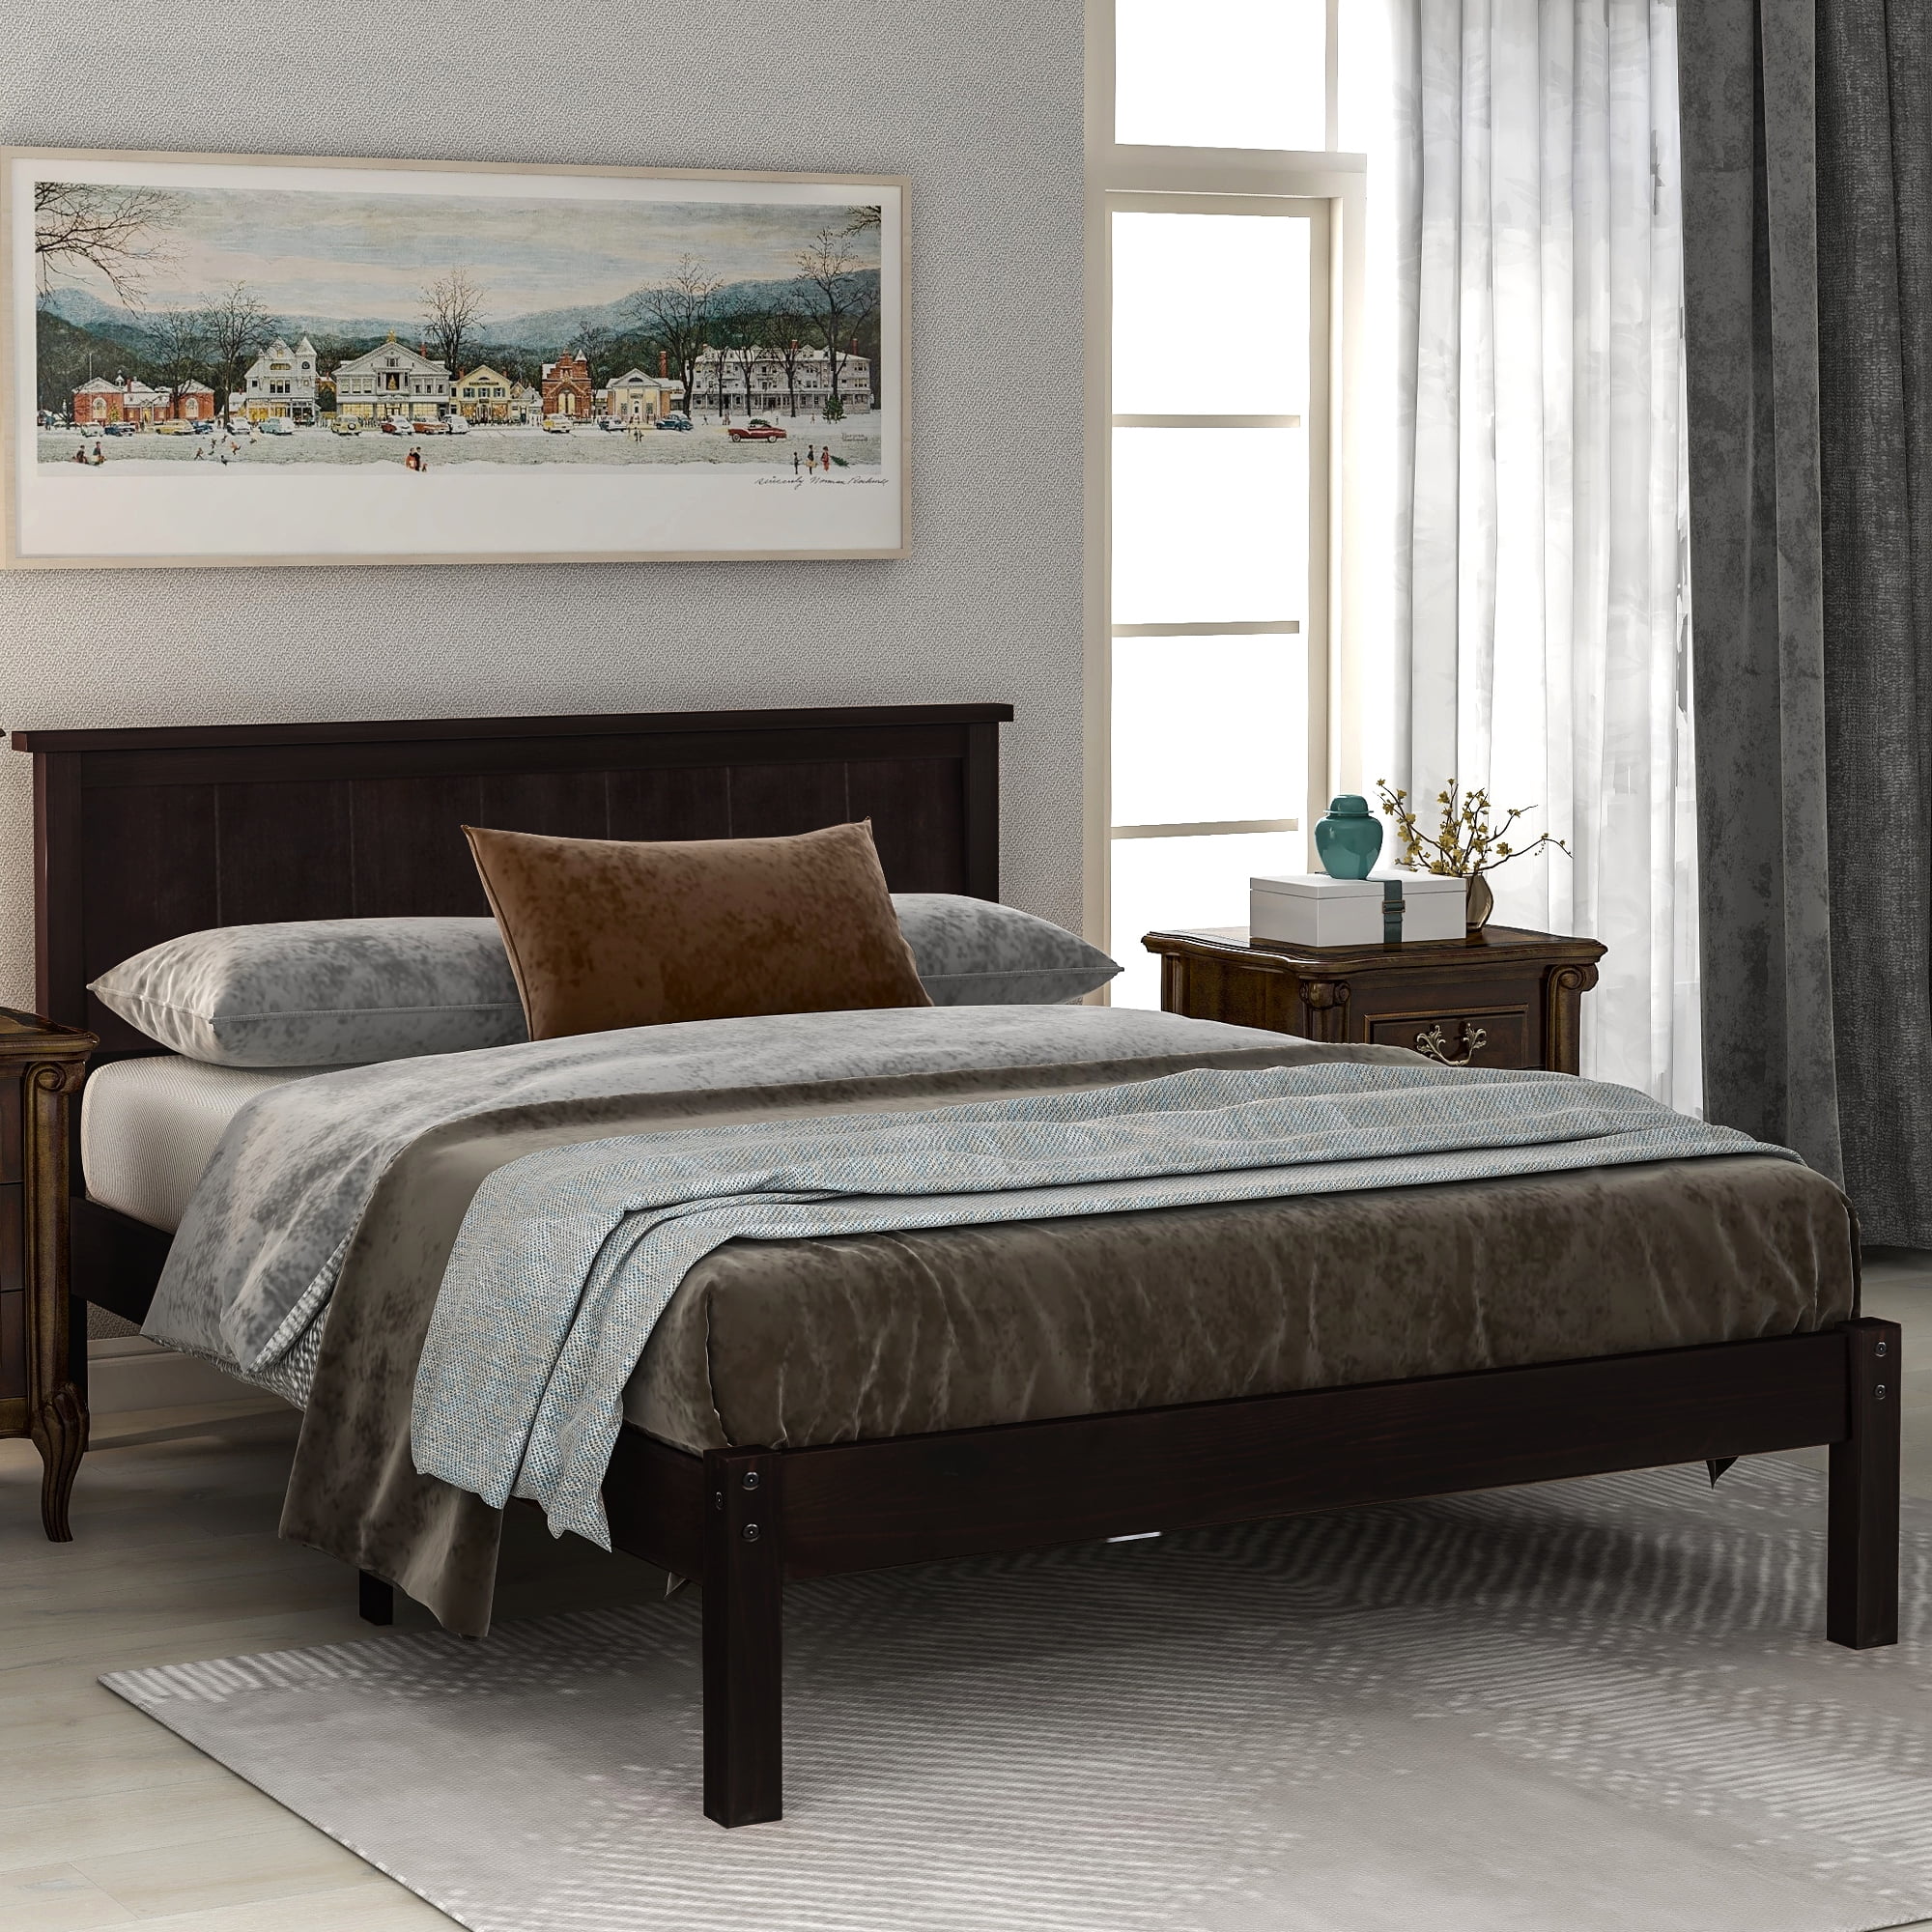 Brown Wood Bed Frames for Full Size, Modern Platform Bed Frame with